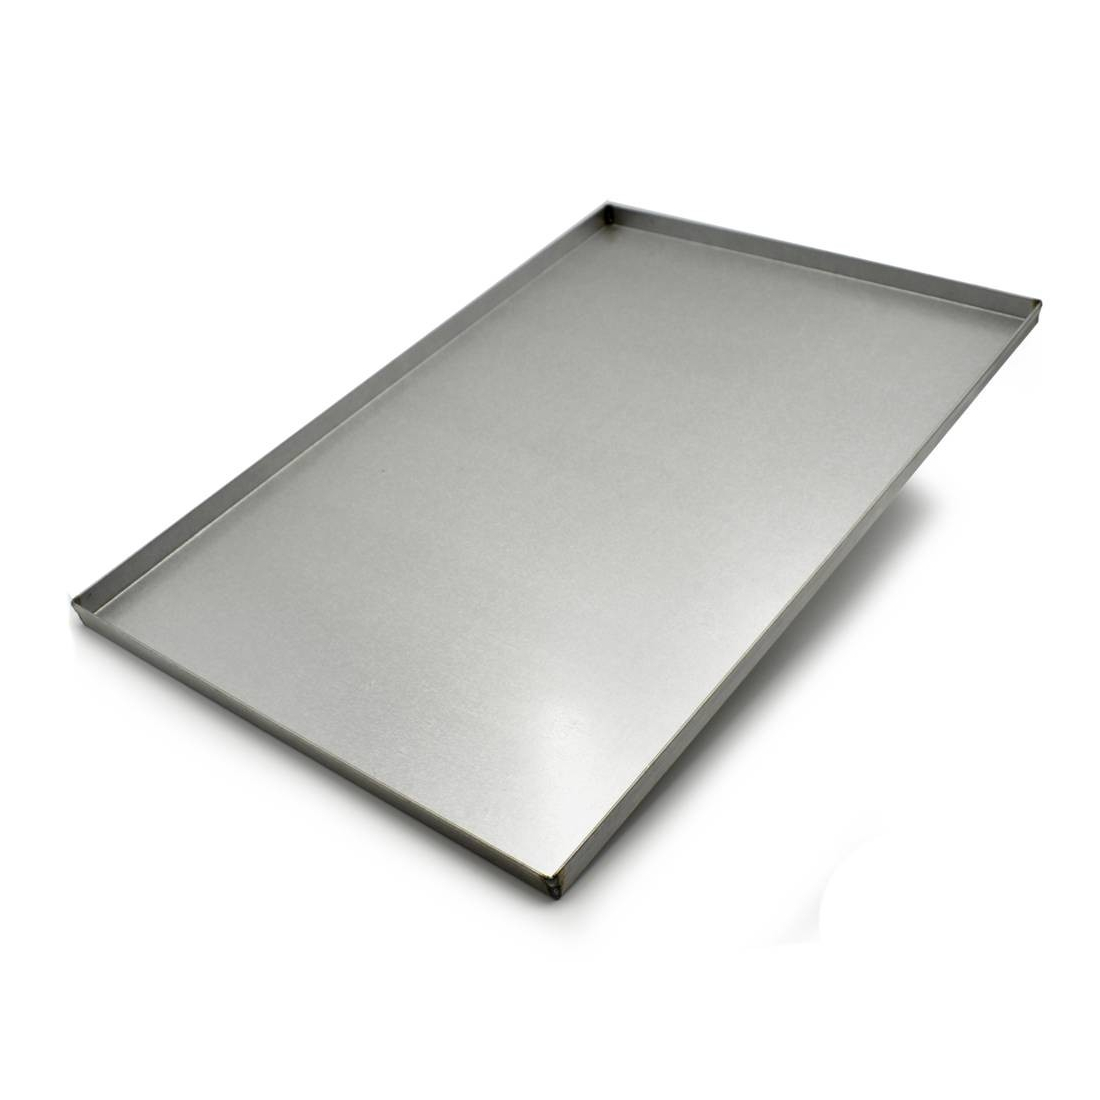 M.C.E Baking tray in aluminized steel 60x40 cm